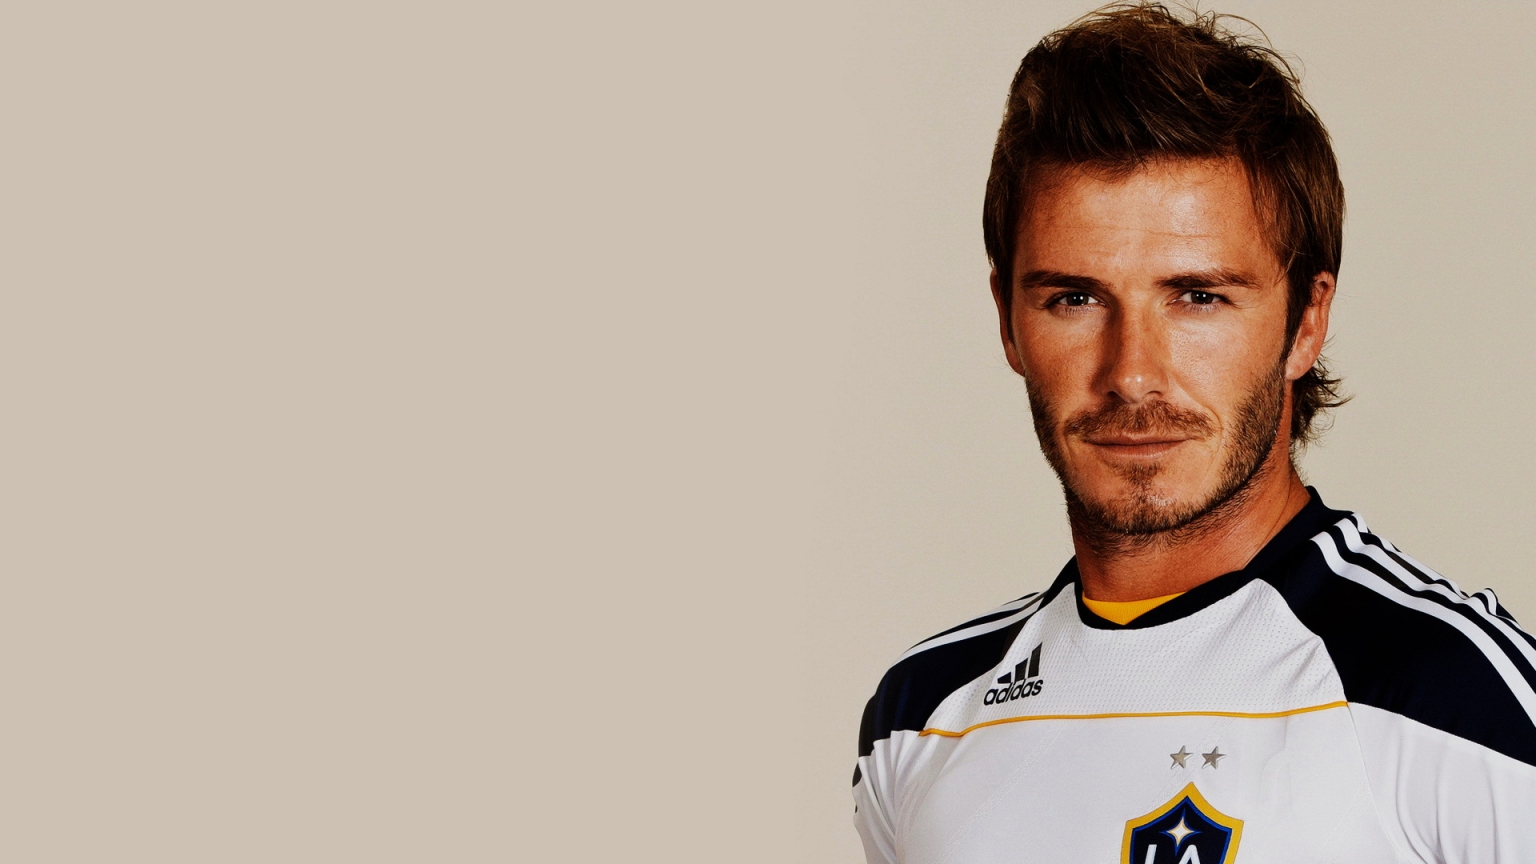 David Beckham Smile for 1536 x 864 HDTV resolution